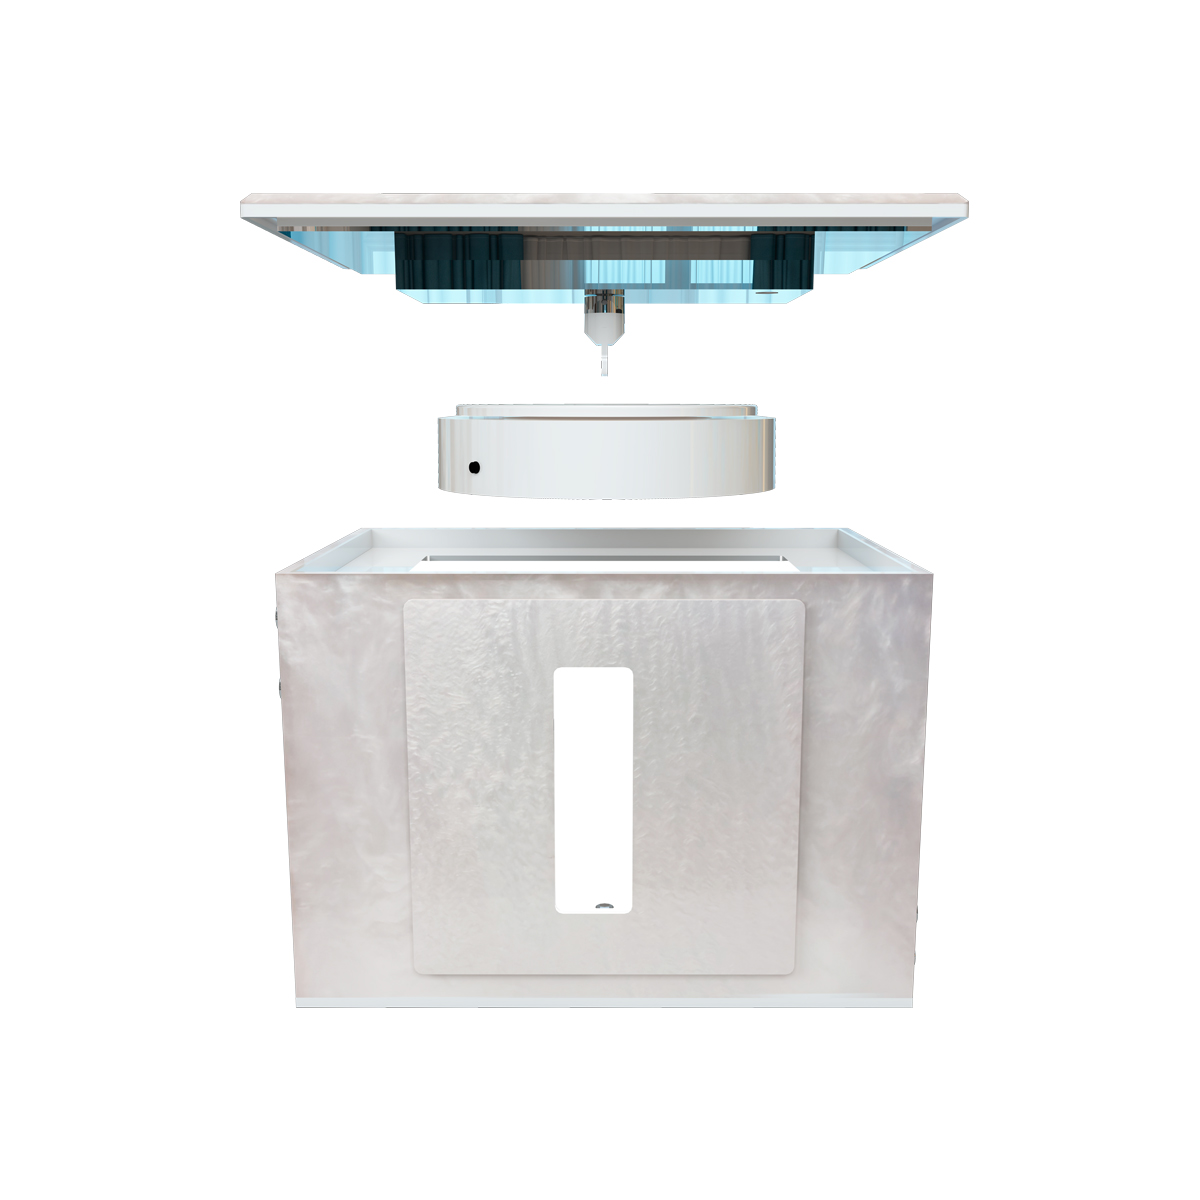 GemLightbox, mini-fotostudio voor sieraden en edelstenen, met LED-verlichting, Bluetooth, 100 – 240 V